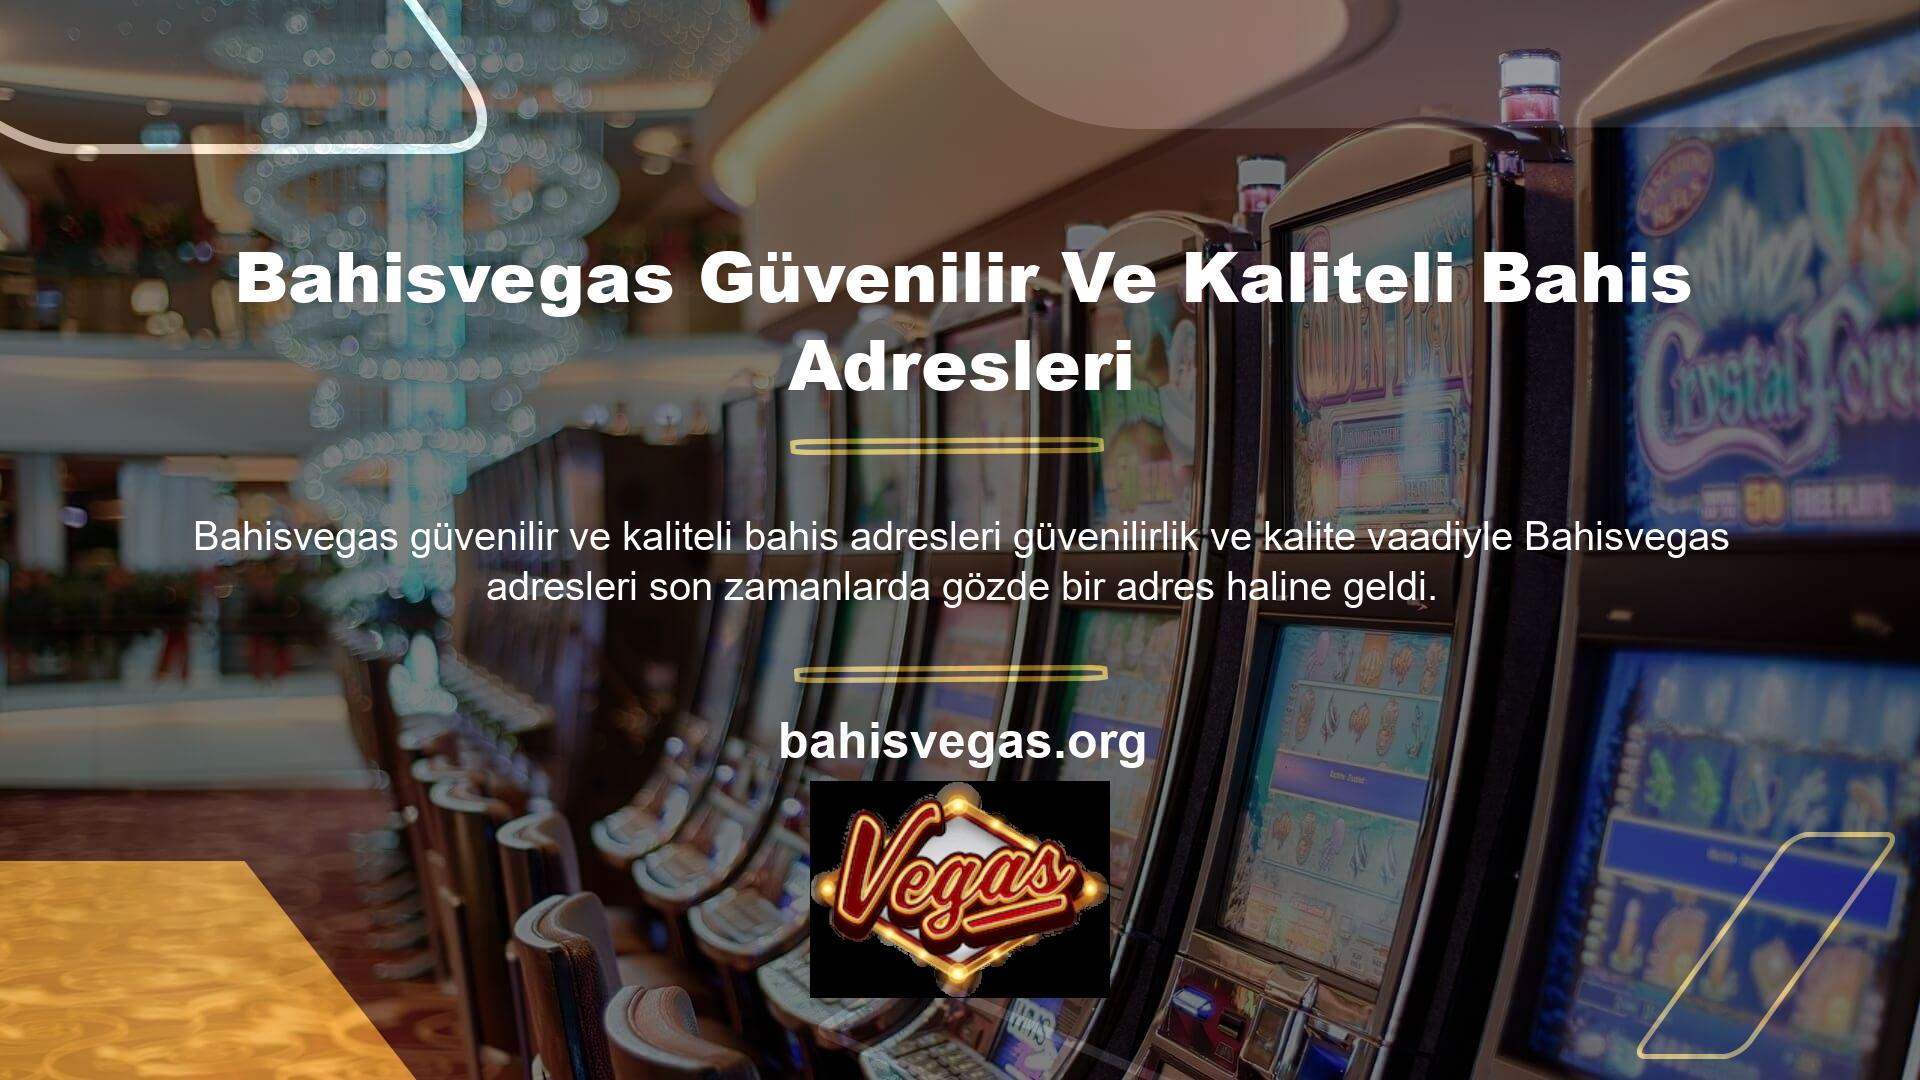 Tüm casino siteleri gibi Bahisvegas de adresleri takip edilirken kapanma riskini aldı